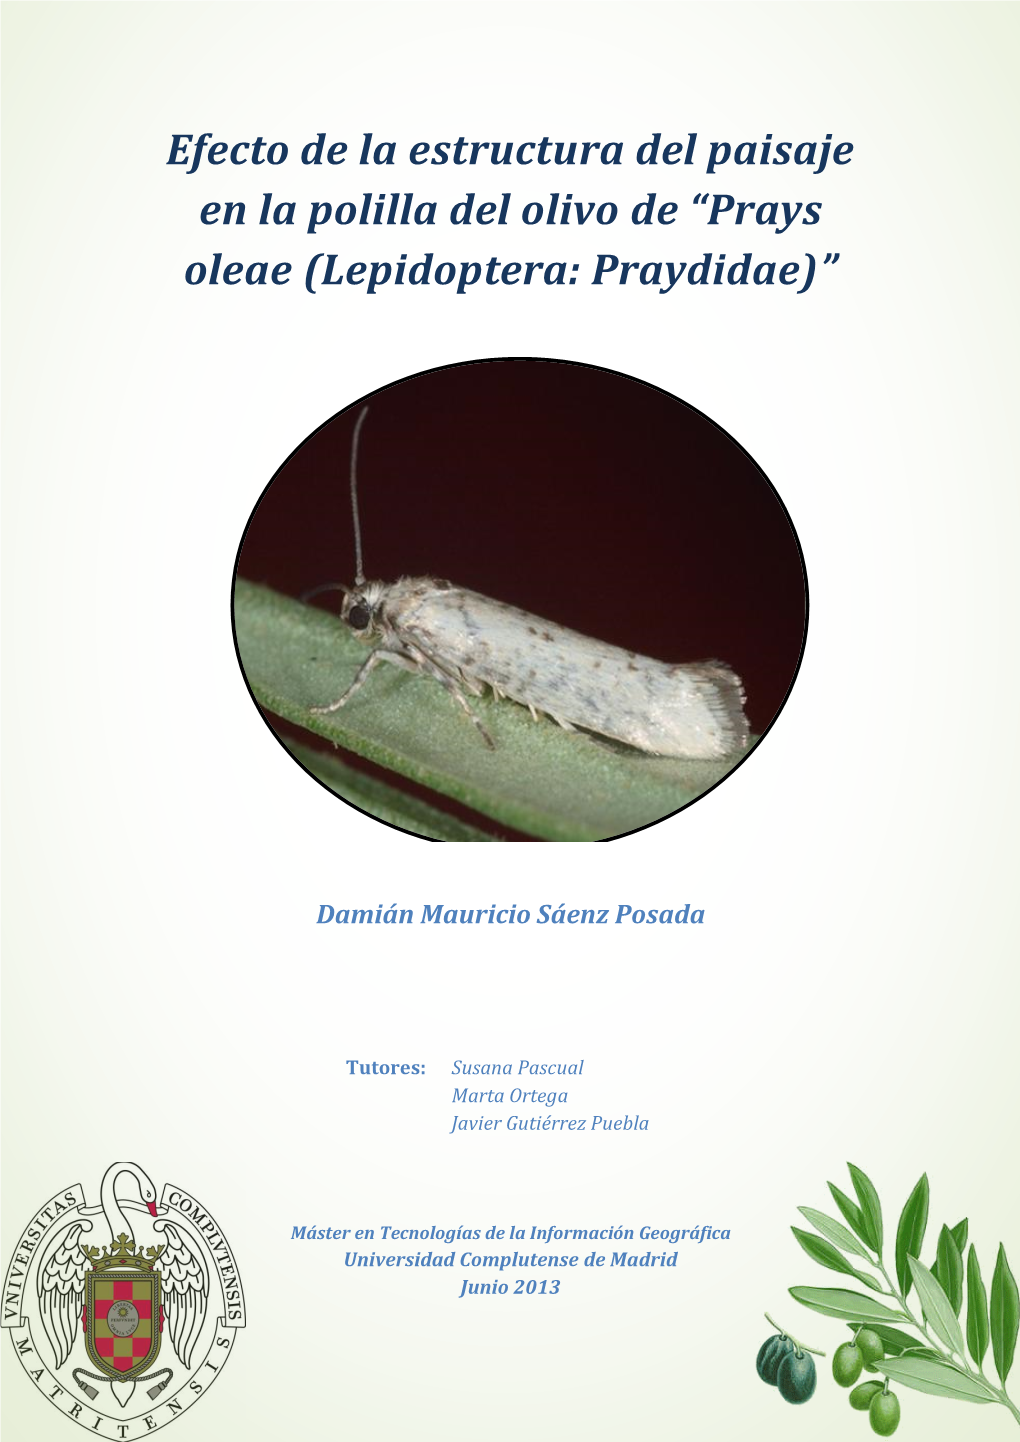 Efecto De La Estructura Del Paisaje En La Polilla Del Olivo De “Prays Oleae (Lepidoptera: Praydidae)”